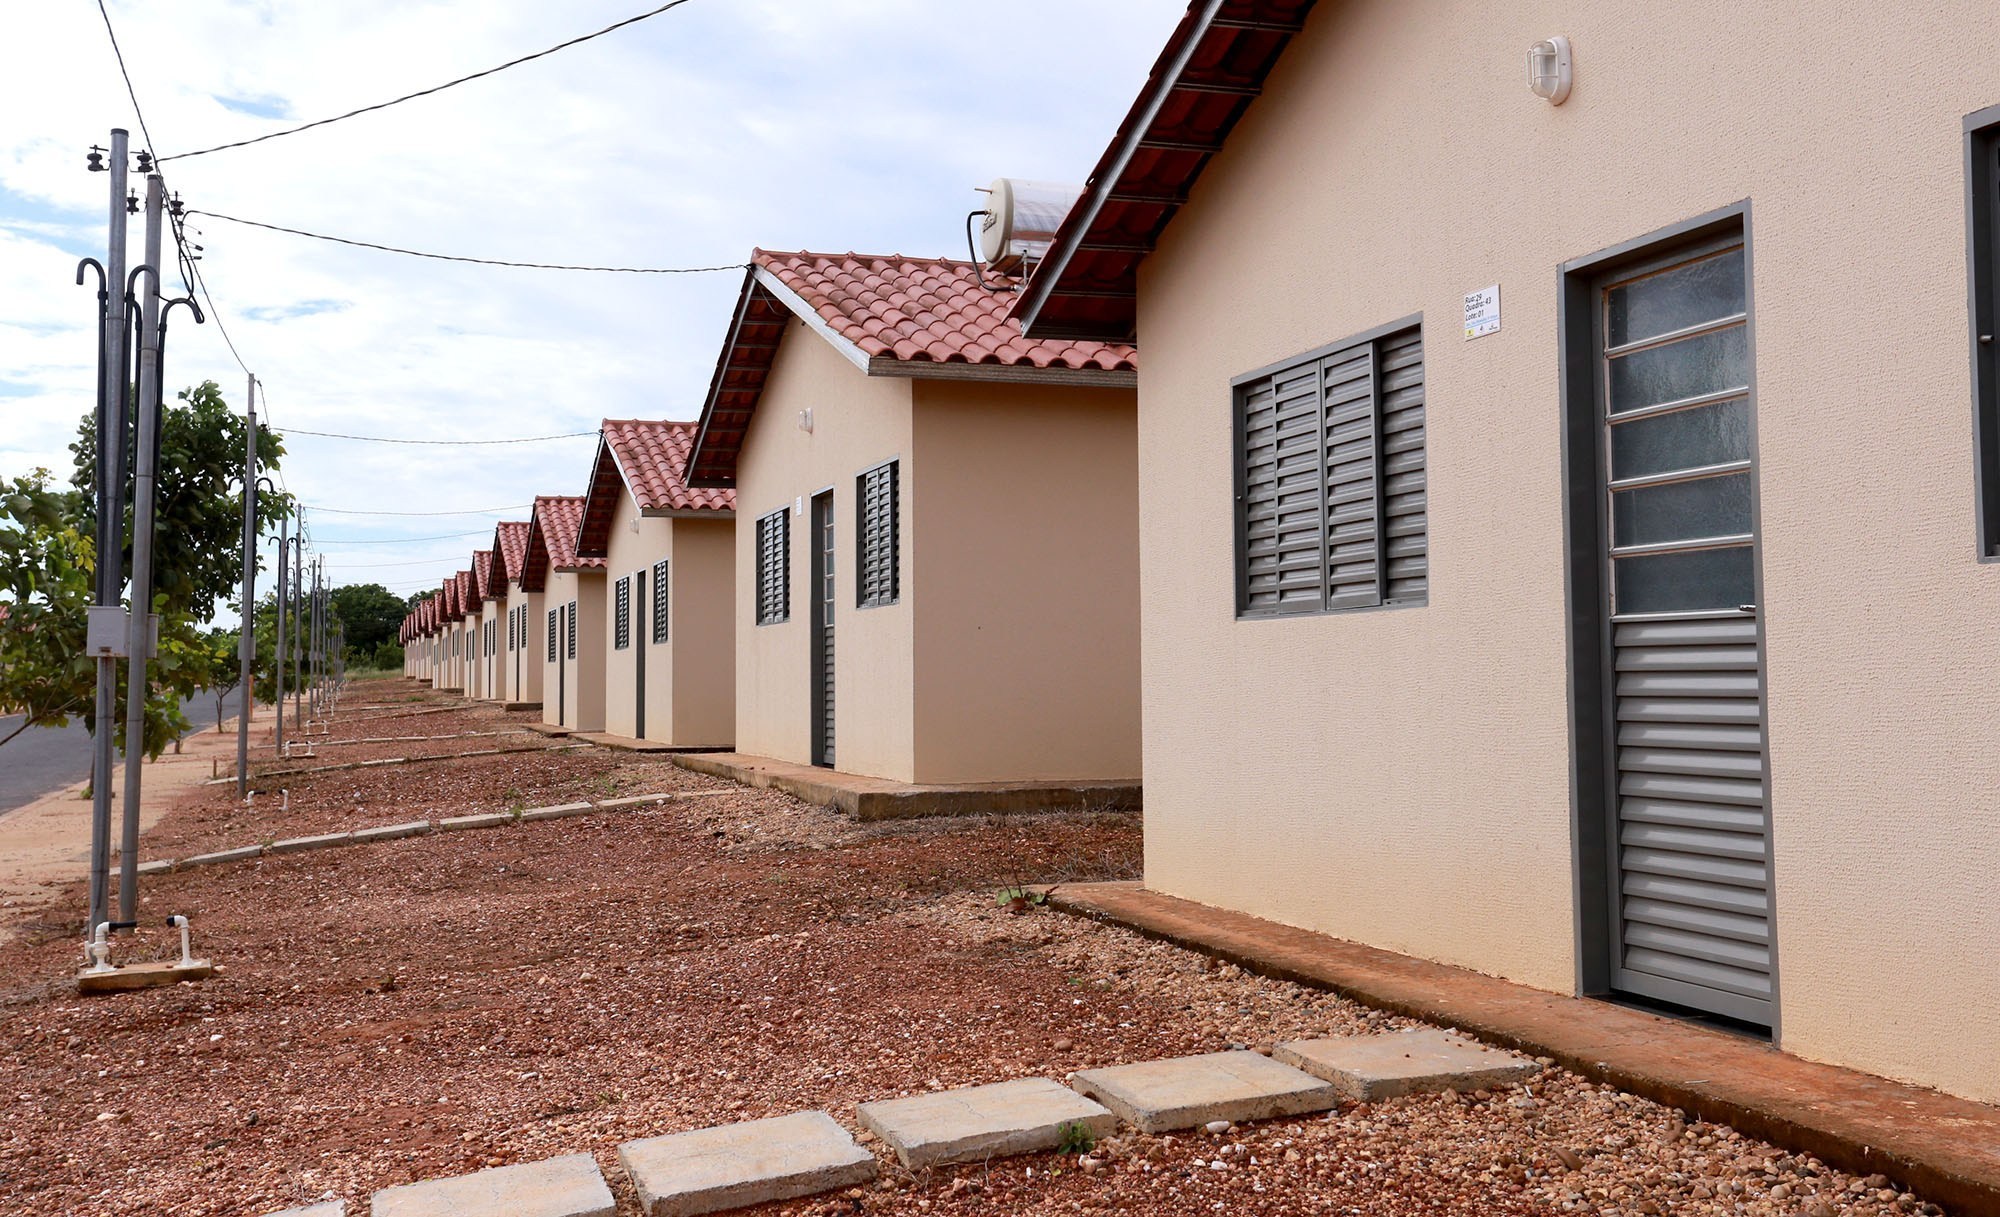 Ser Família Habitação: 6 municípios iniciam construção de casas 